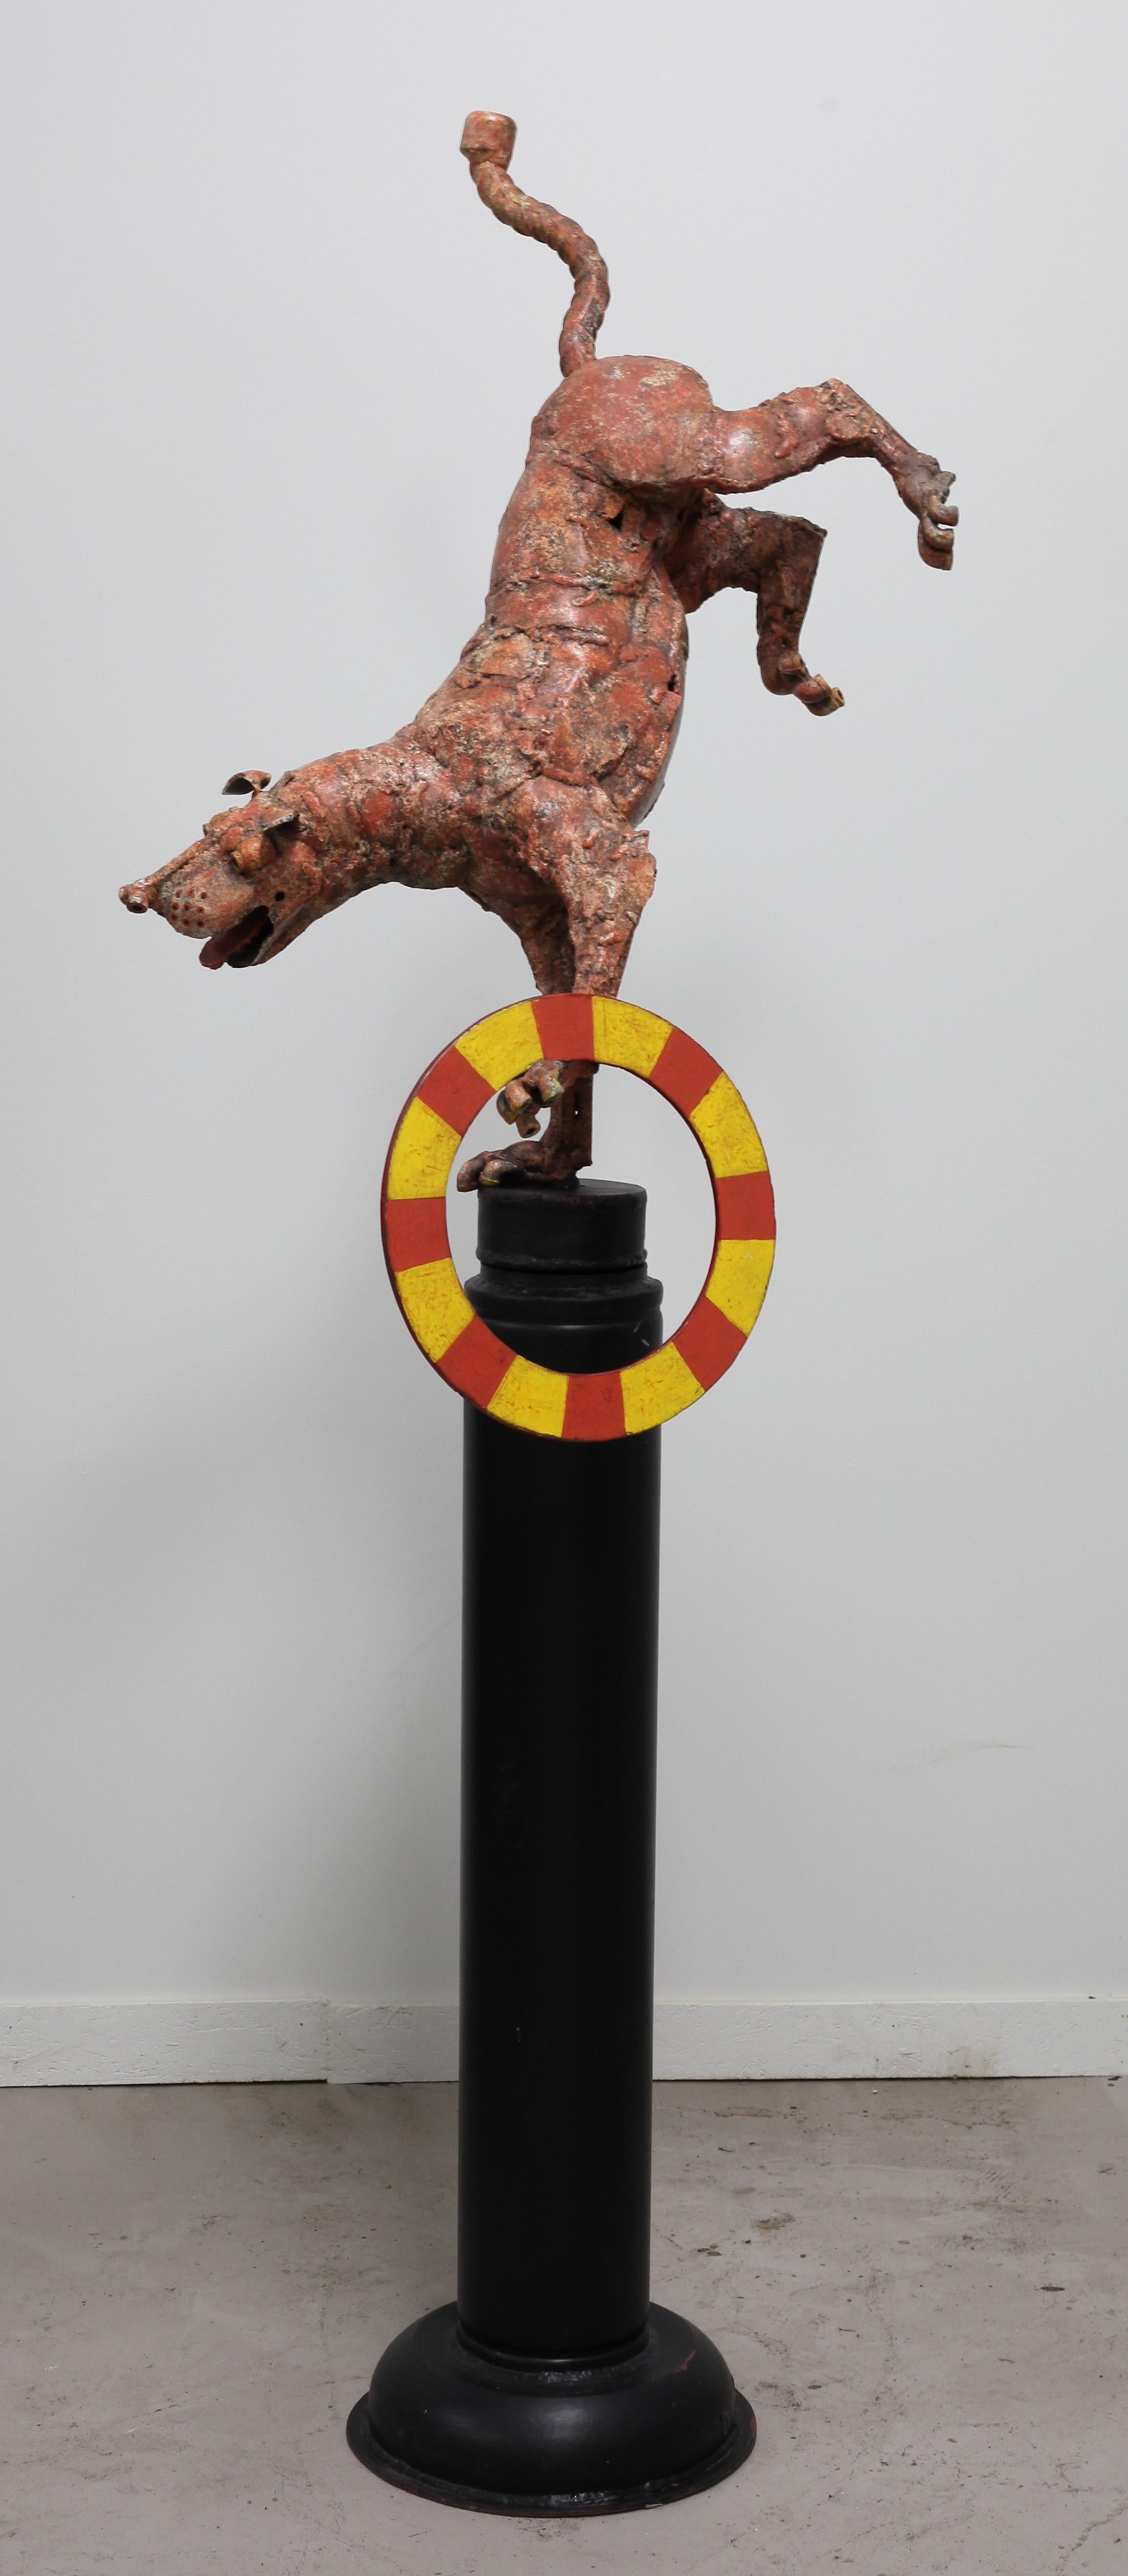 L'univers de sculptures canines vivantes de David L. Deming reflète l'amour de l'artiste pour les chiens et jette un regard fantaisiste sur le comportement à quatre pattes sous son meilleur jour.
Sa vaste et unique collection de sculptures de chiens